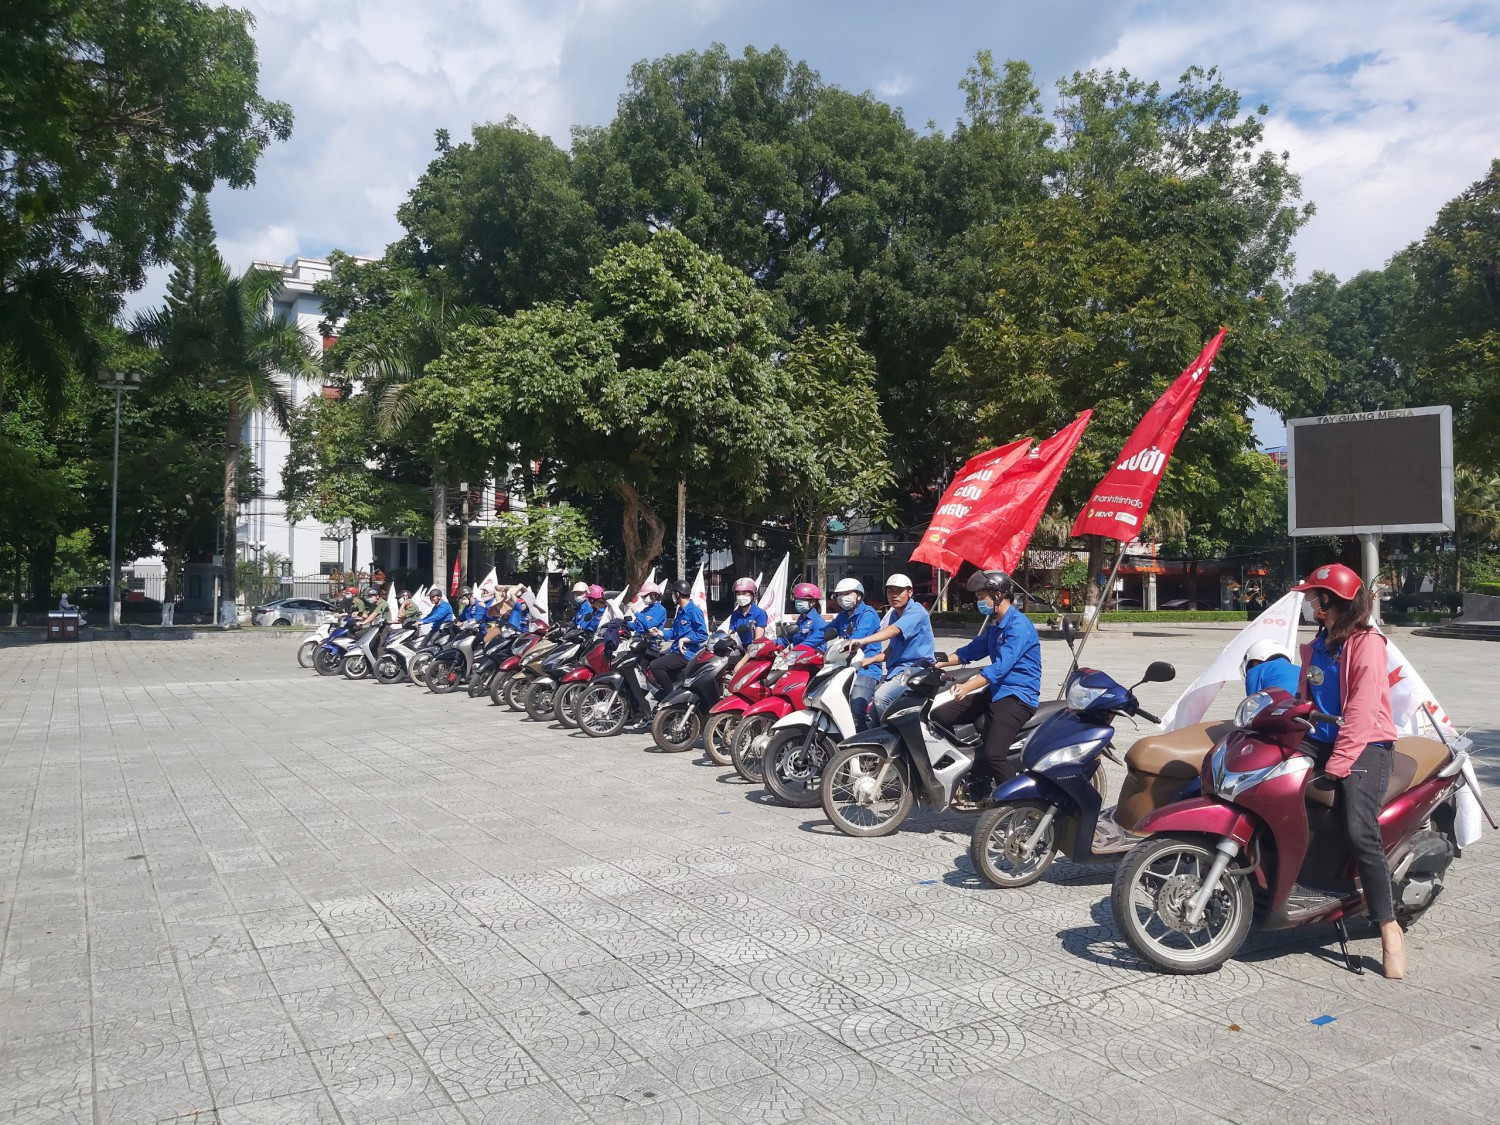 Đoàn viên thanh chuẩn bị xuất phát diễu hành tuyên truyền cổ động chương trình Hành trình đỏ năm 2022